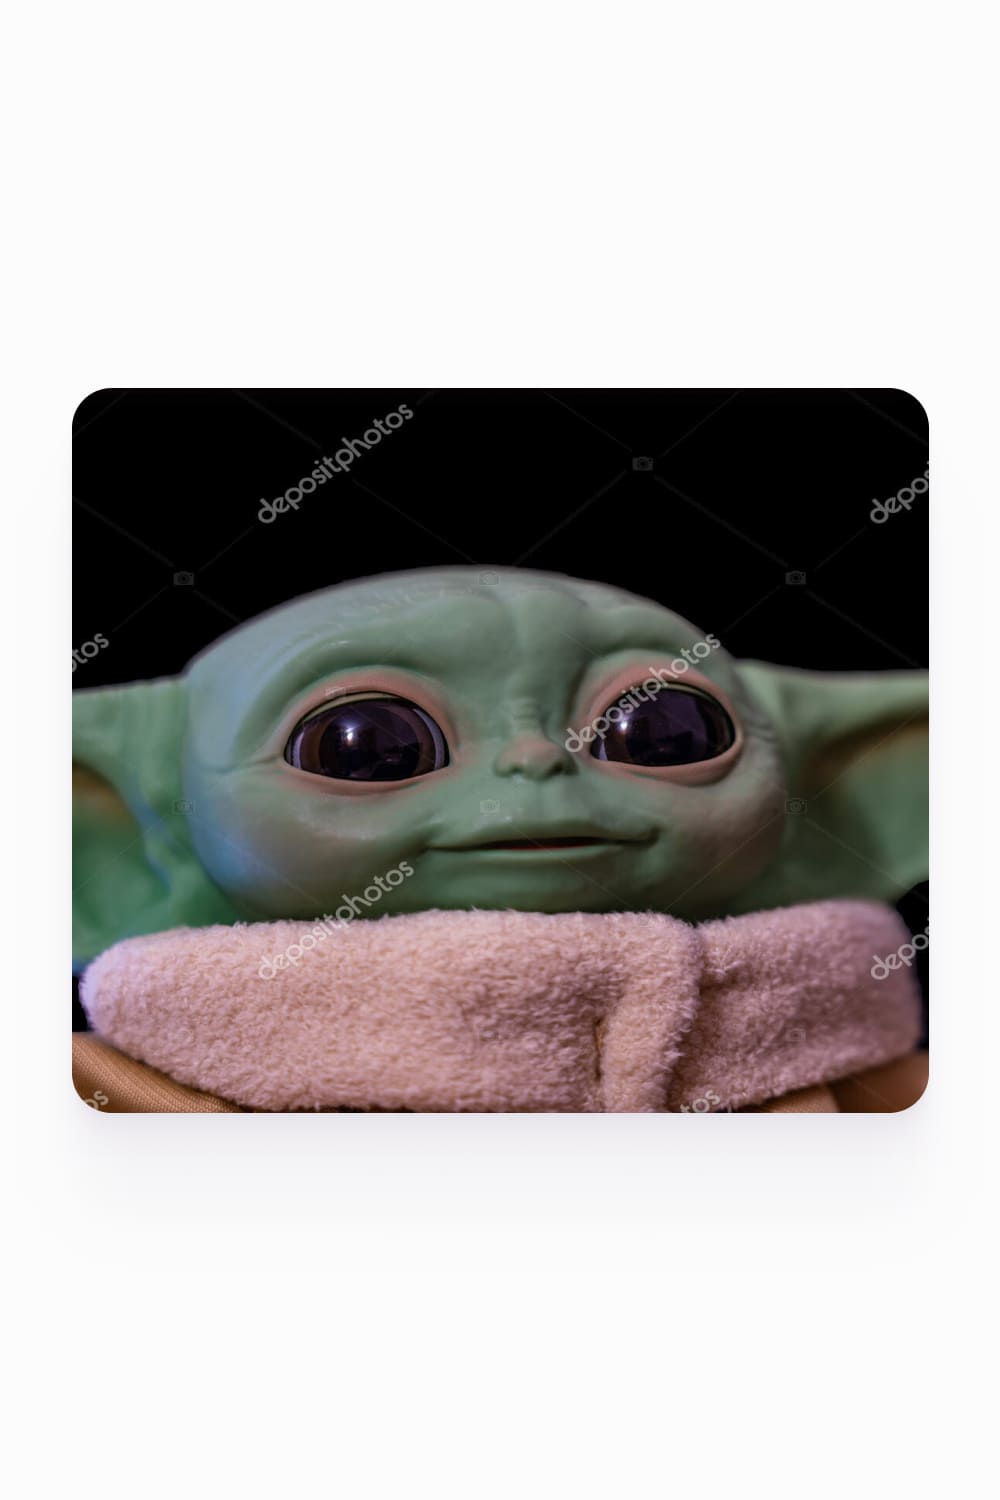 Baby Yoda photo.